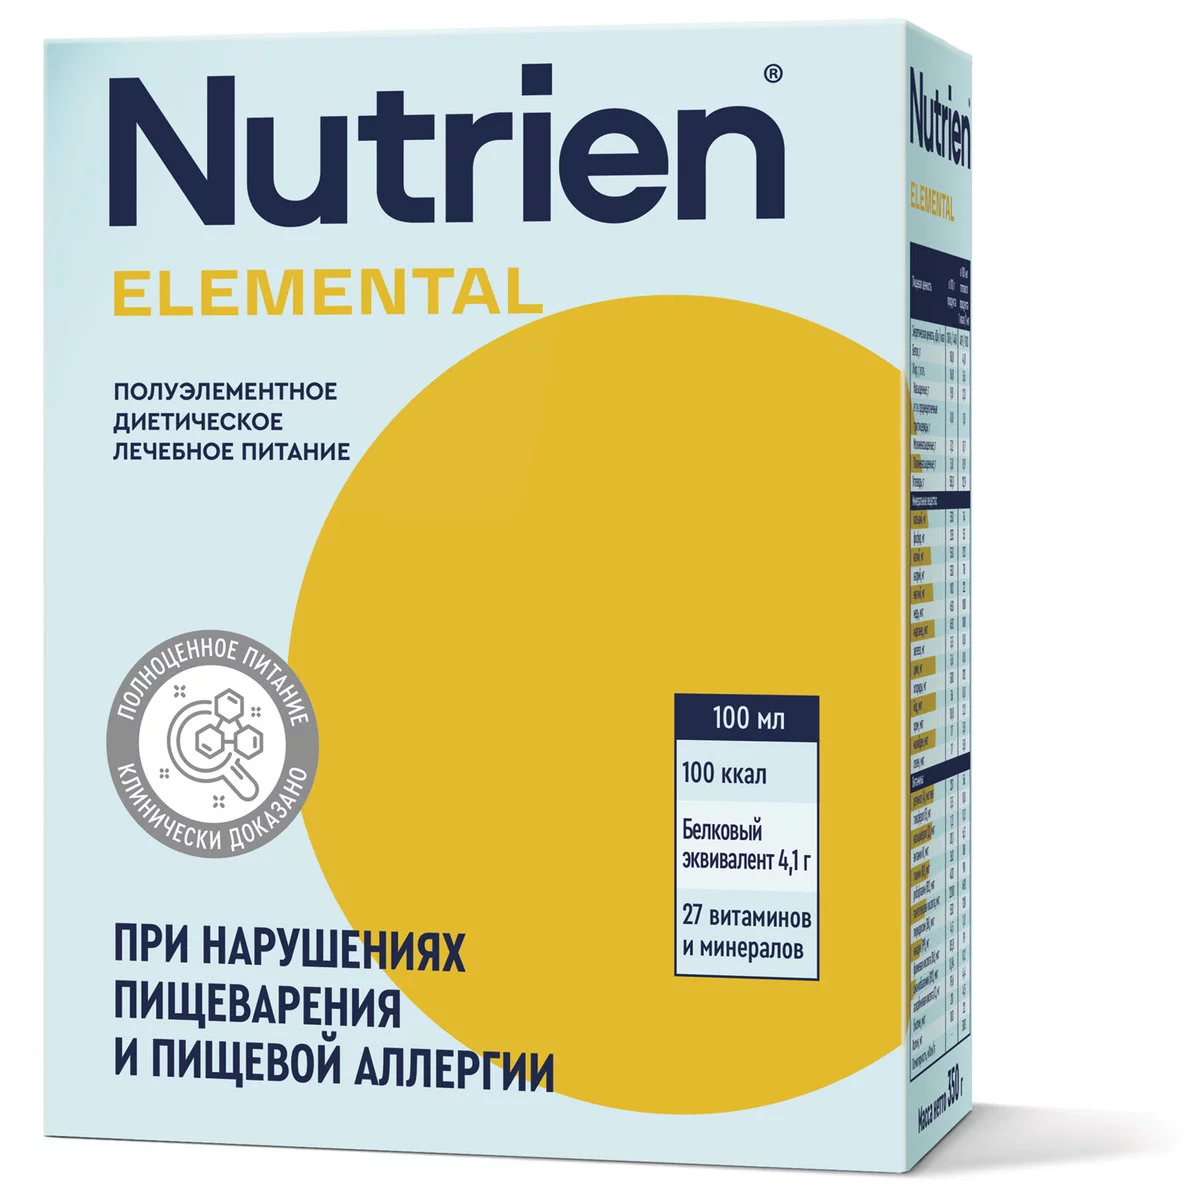 Nutrien Elemental - 9